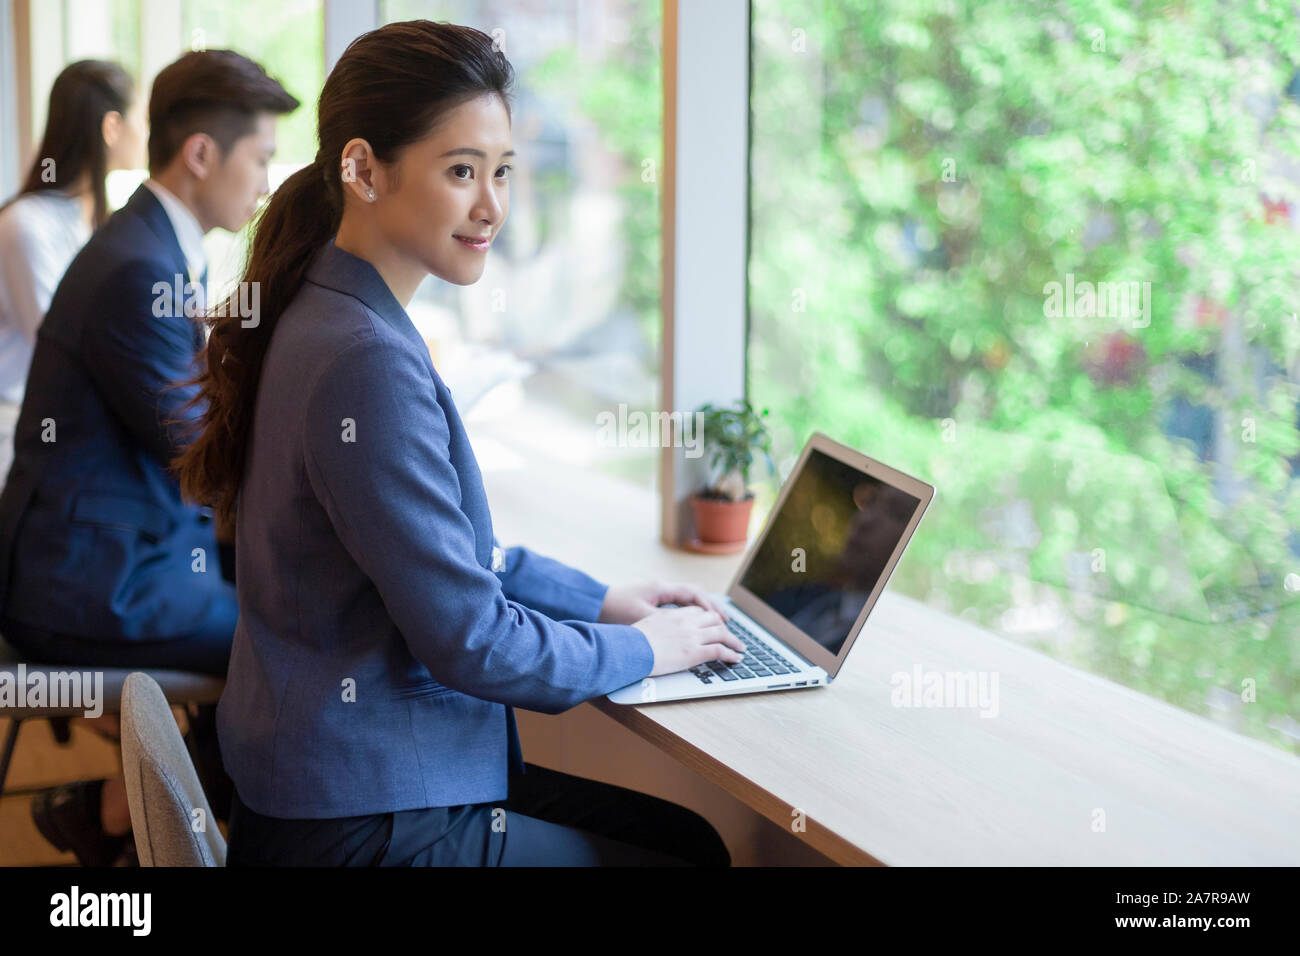 Seitenansicht Schuß eines lächelnden jungen Geschäftsfrau mit einem schwarzen Pferdeschwanz mit einem Laptop an einem Schreibtisch in einem Büro Stockfoto